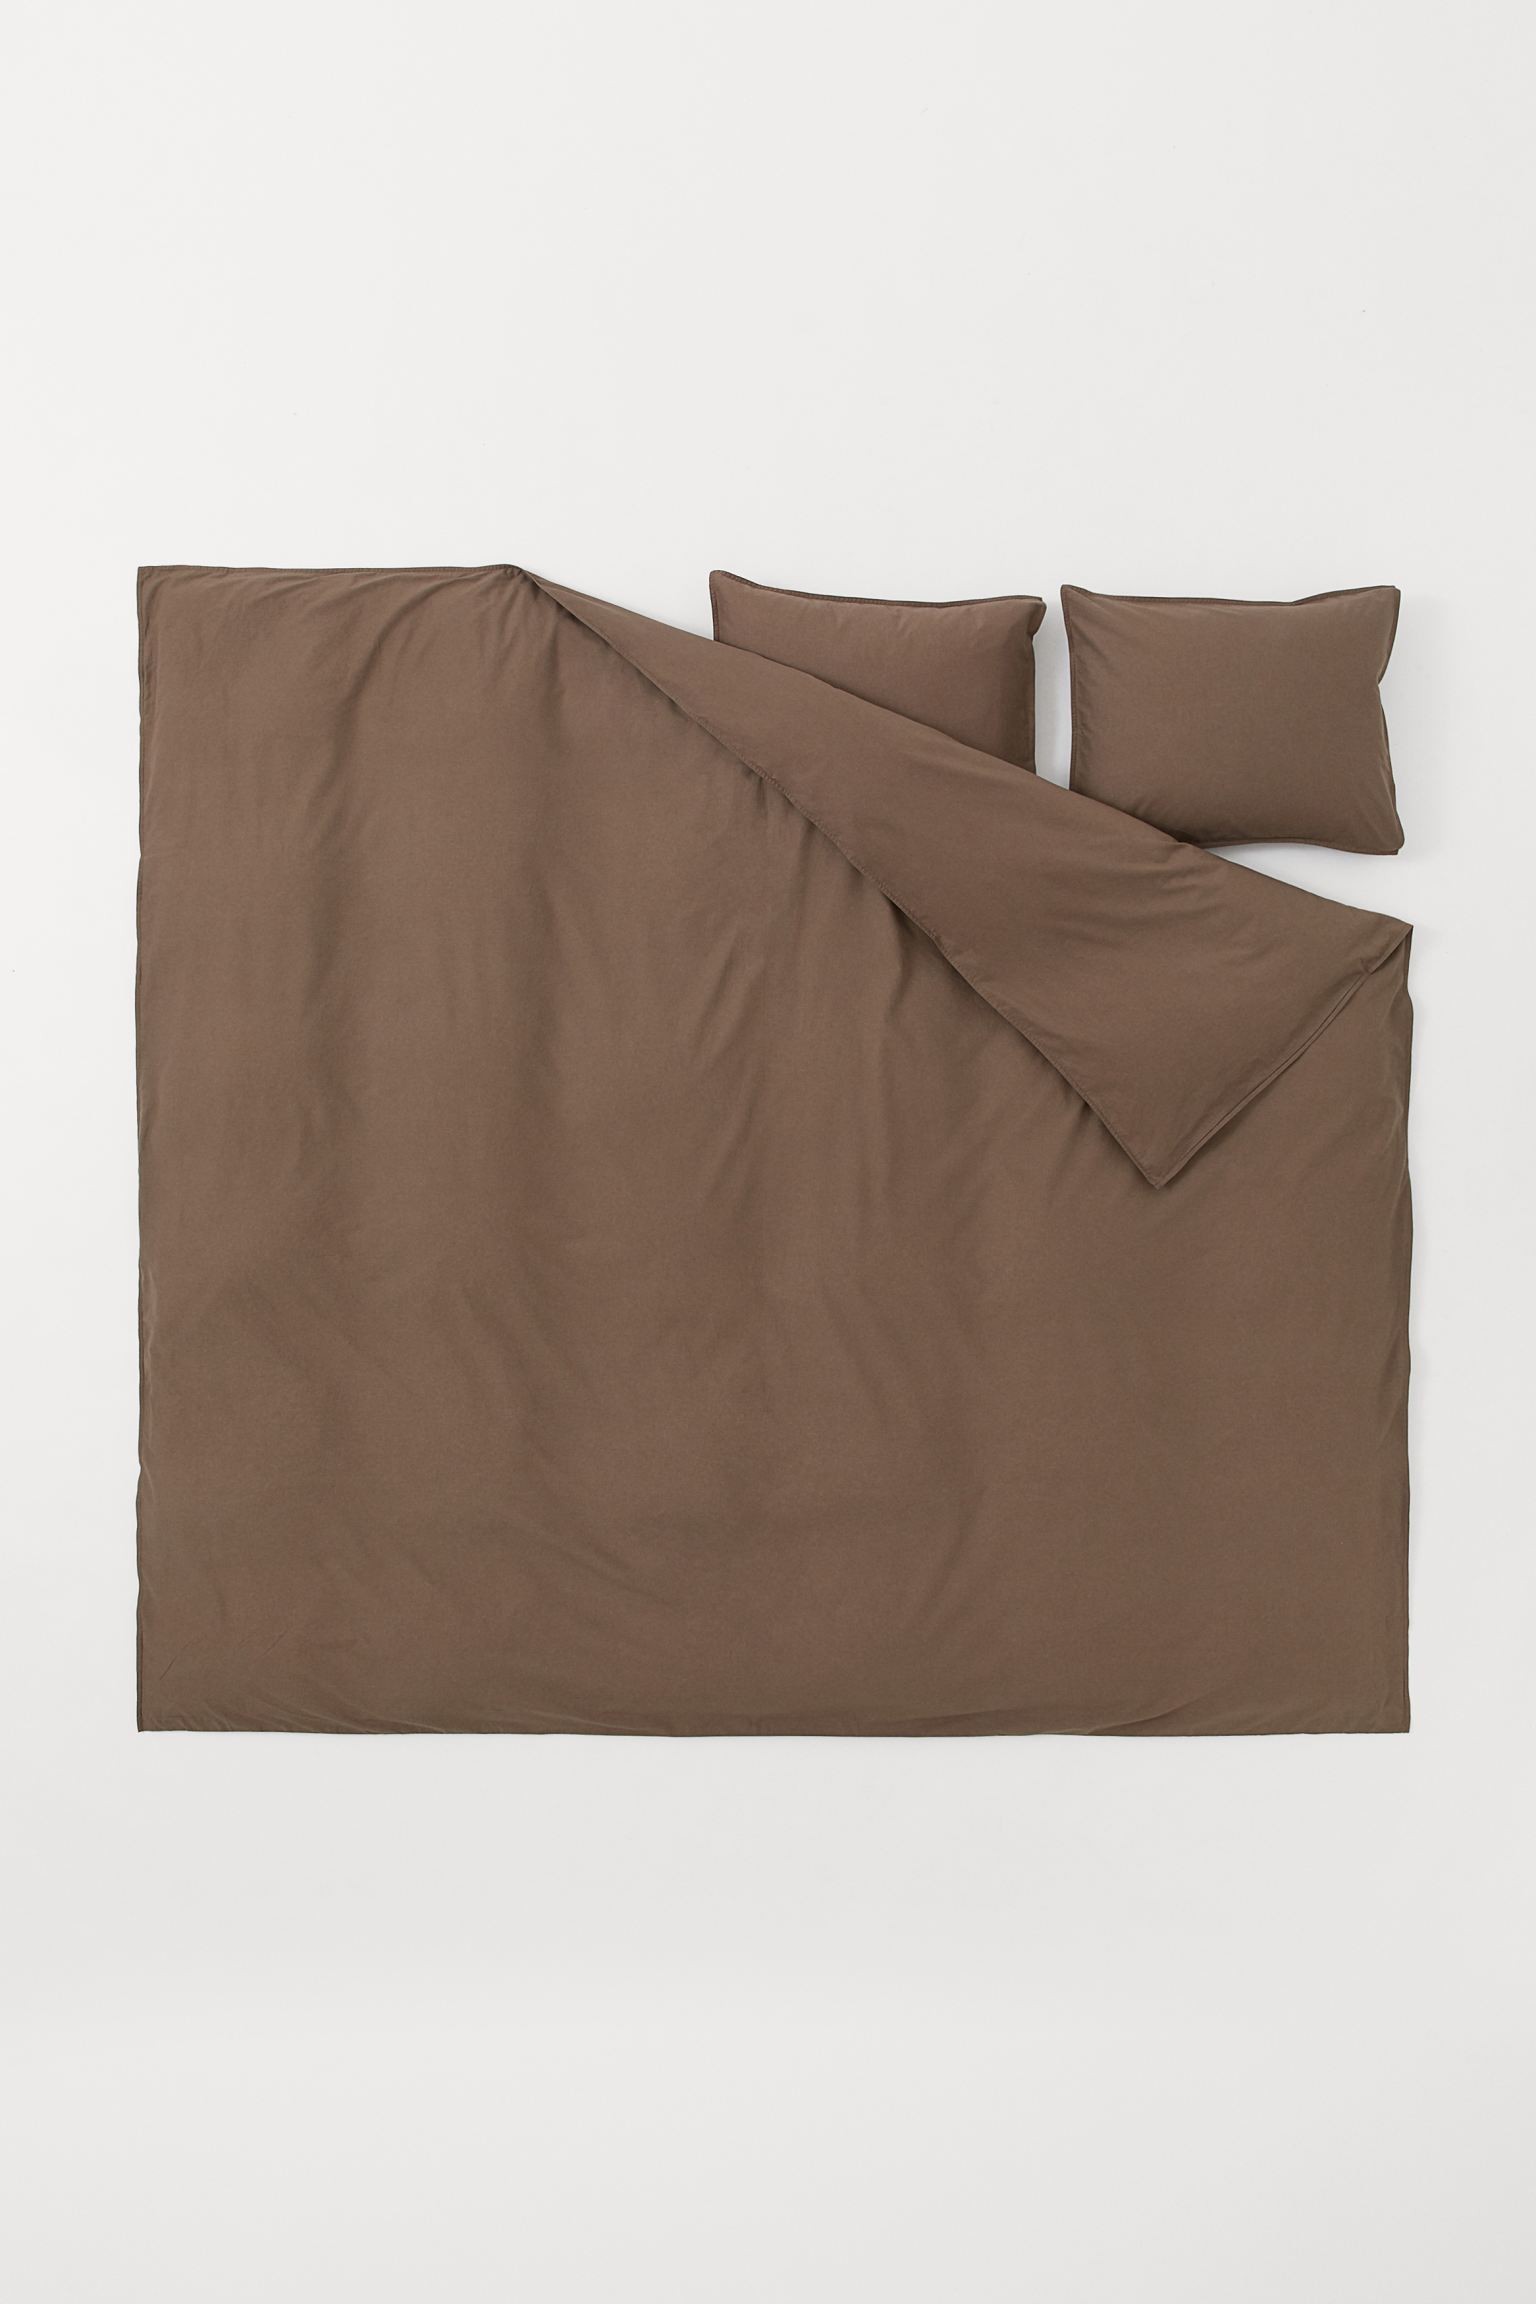 Двуспальное постельное белье из хлопка, Темно коричневый, 200x200 + 50x60